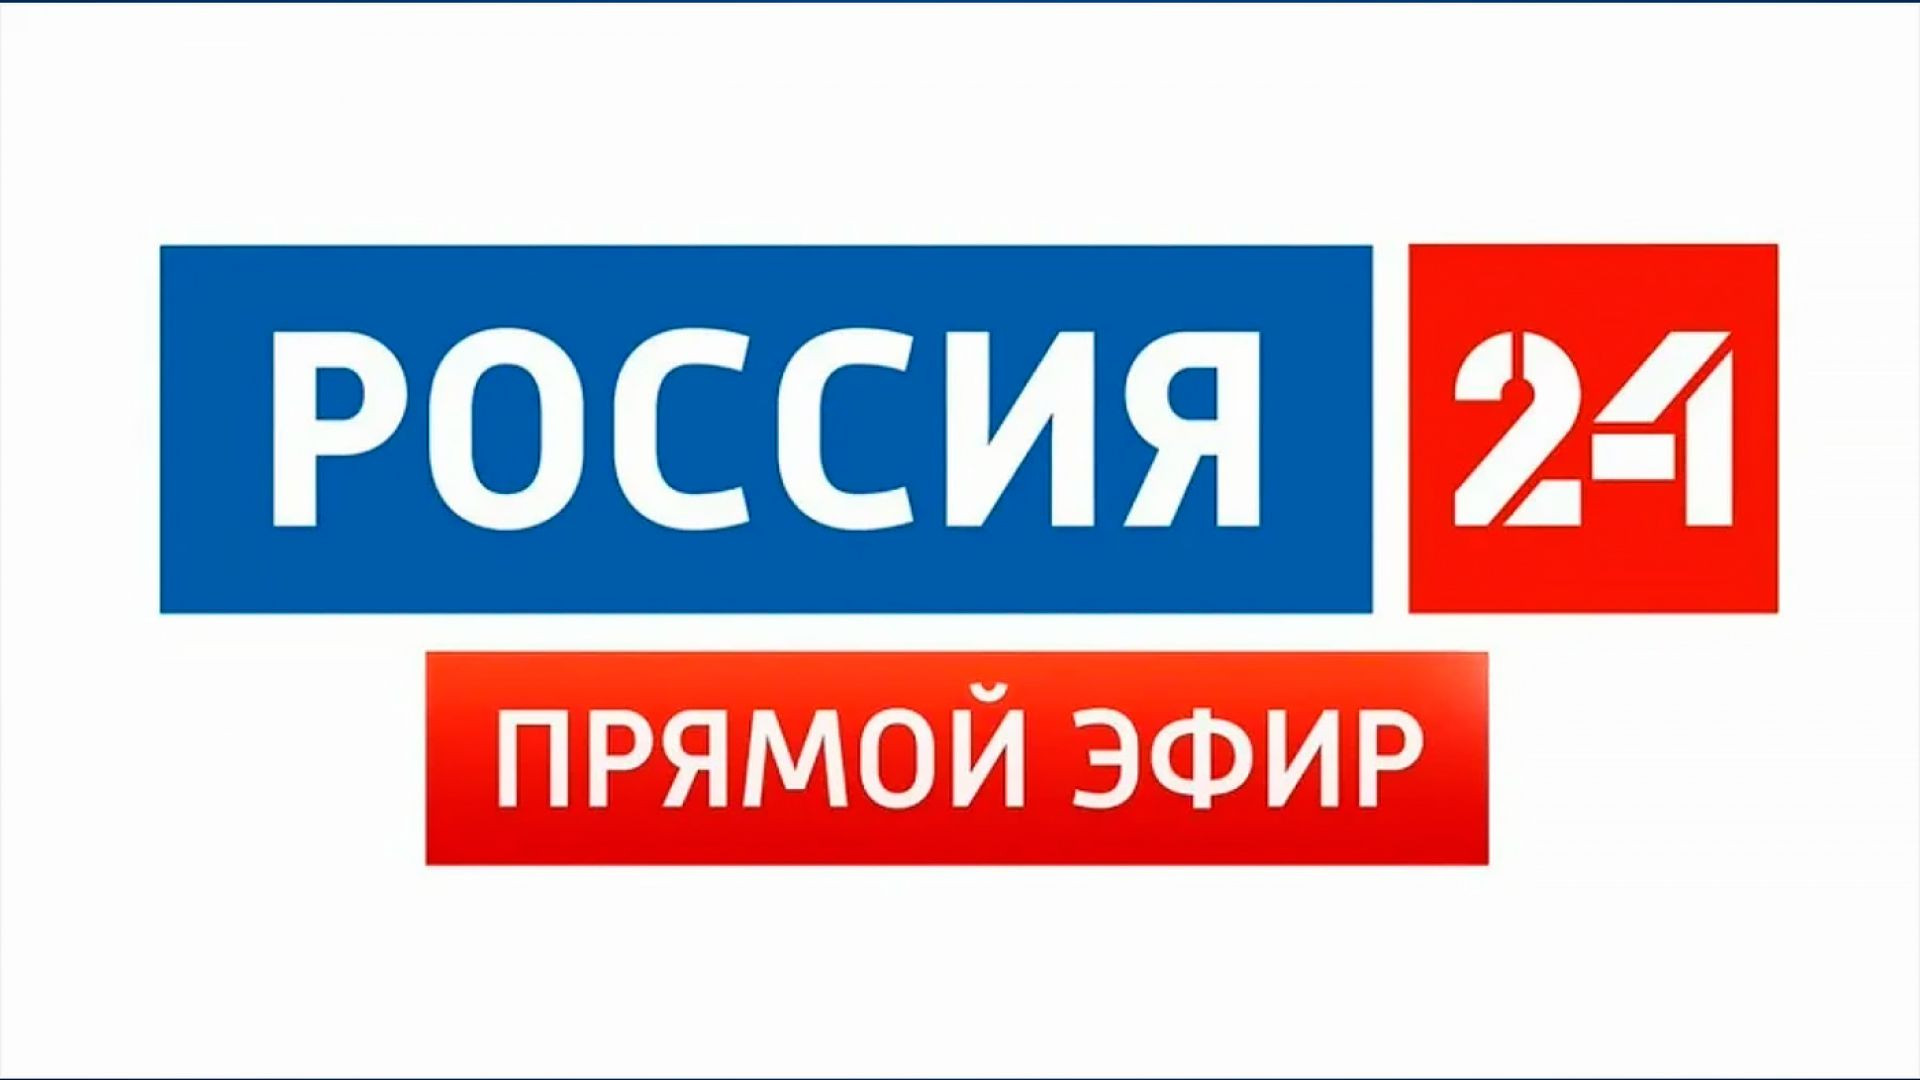 Прямой эфир канала россия 24 сейчас